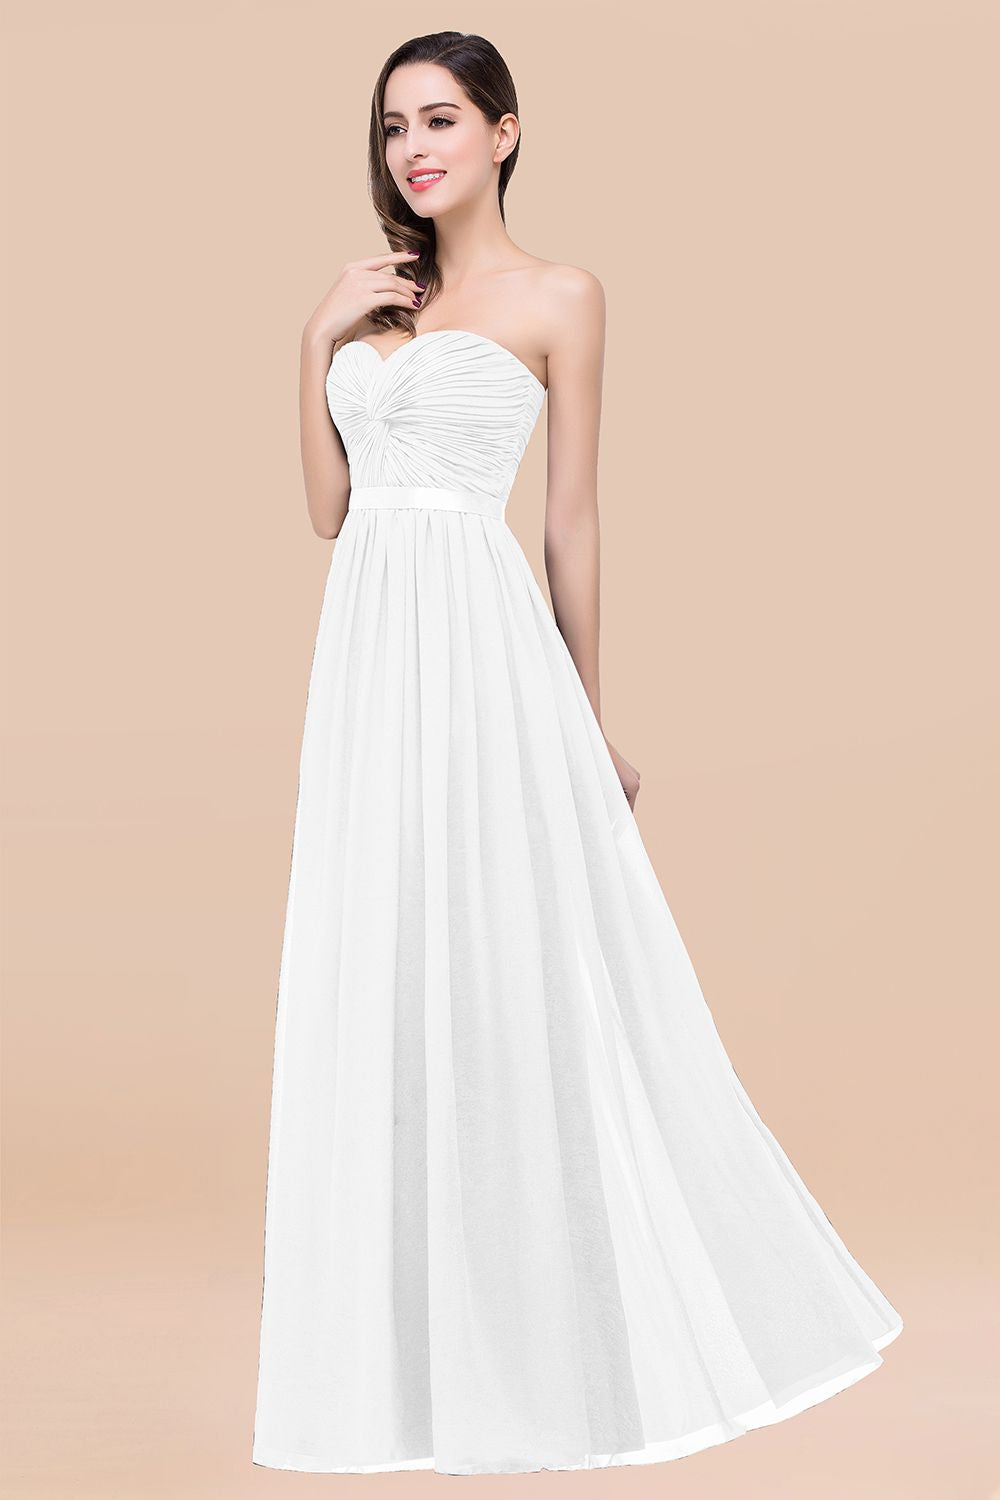 Affordable Sweetheart Ruffle Navy Chiffon Bridesmaid Dress With Ribbon-27dress